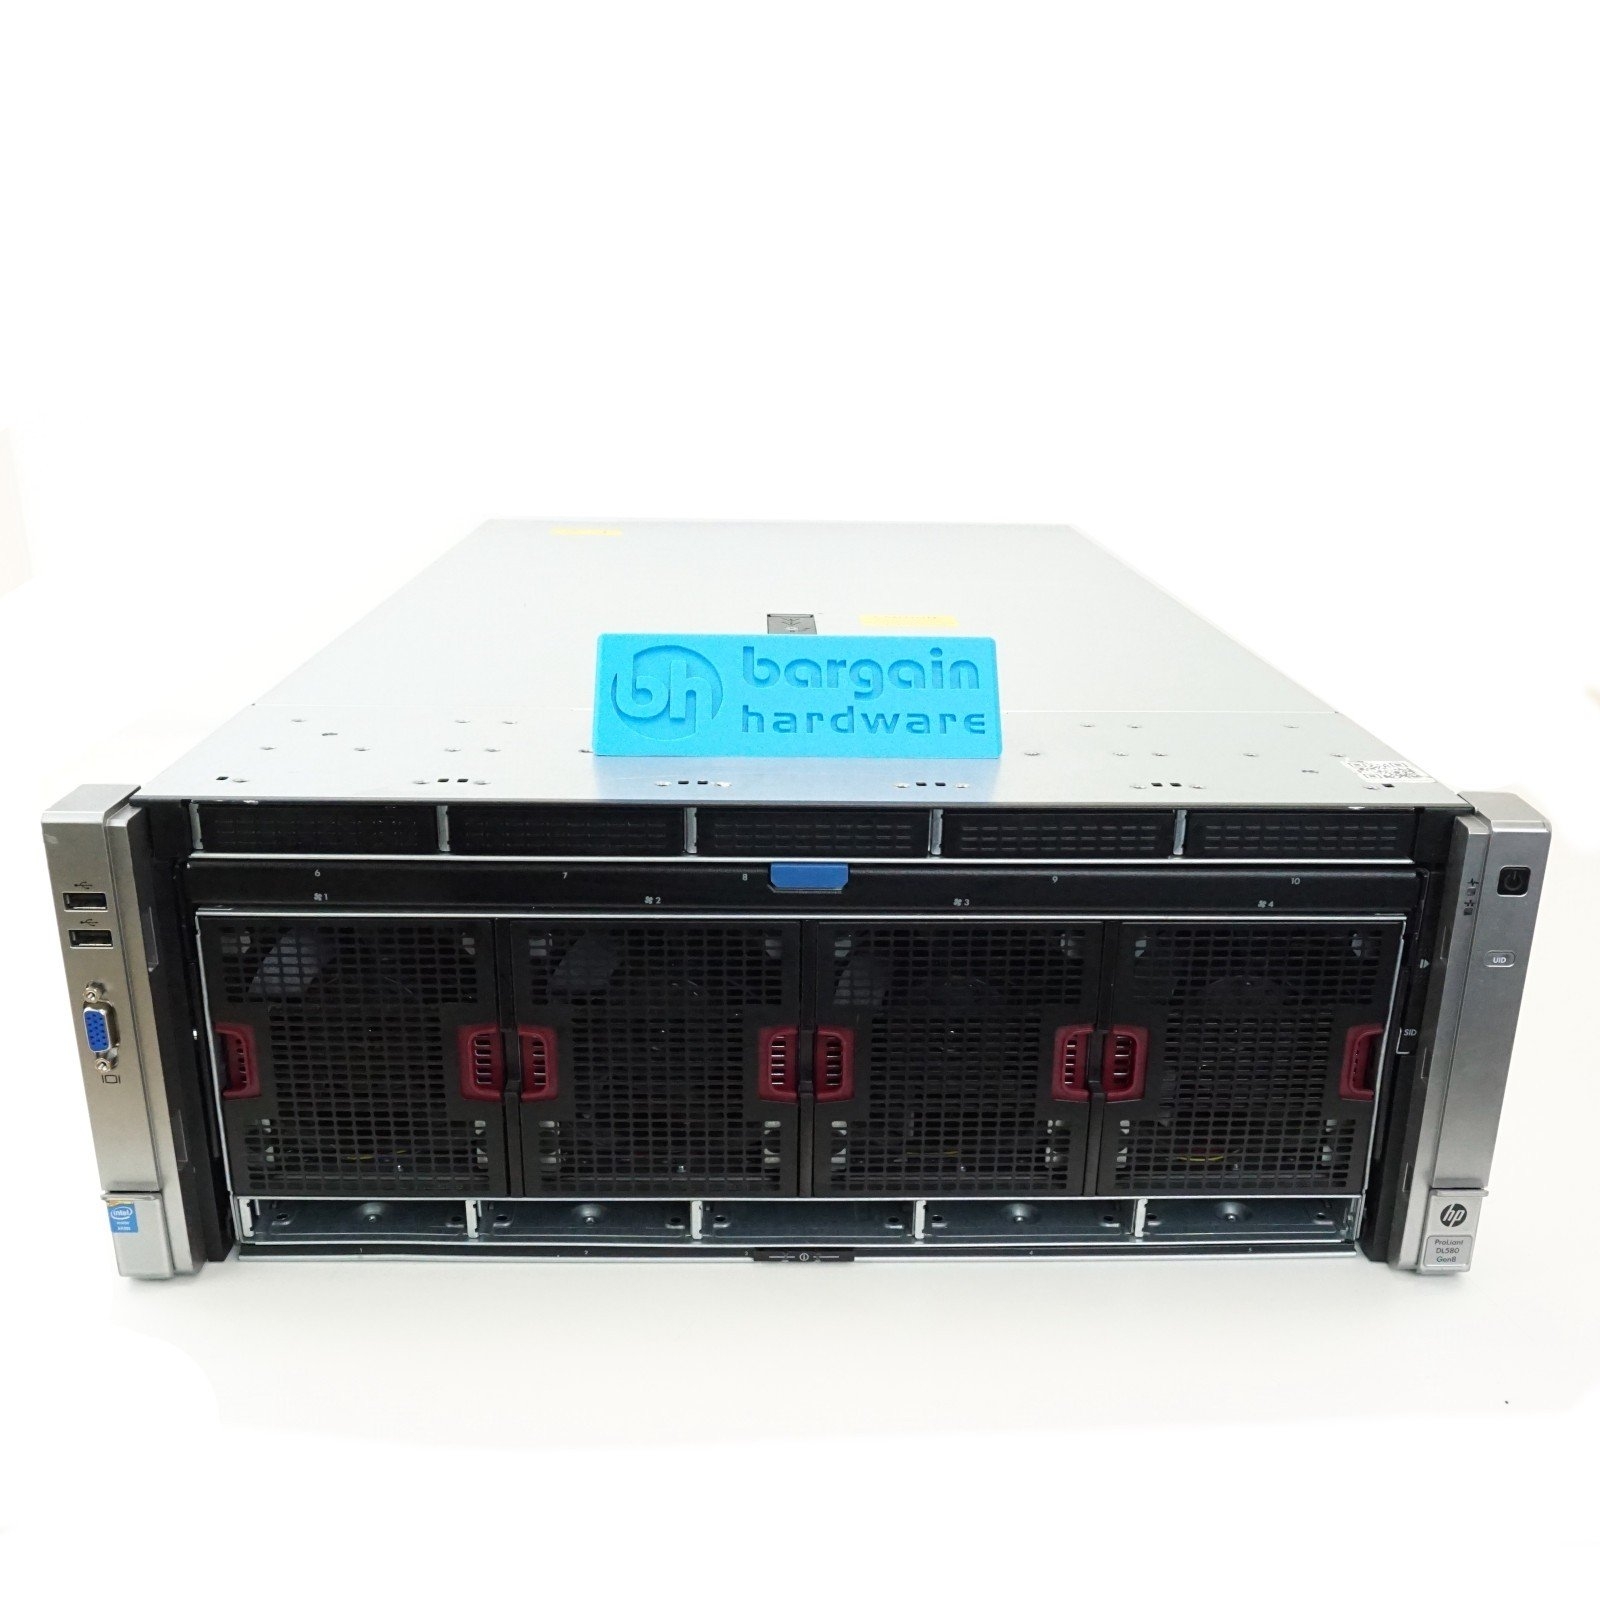 HPE ProLiant DL580 Gen8 10SFF 4x Xeon E7-4880 V2 15C, 512GB RAM, P830i 2GB